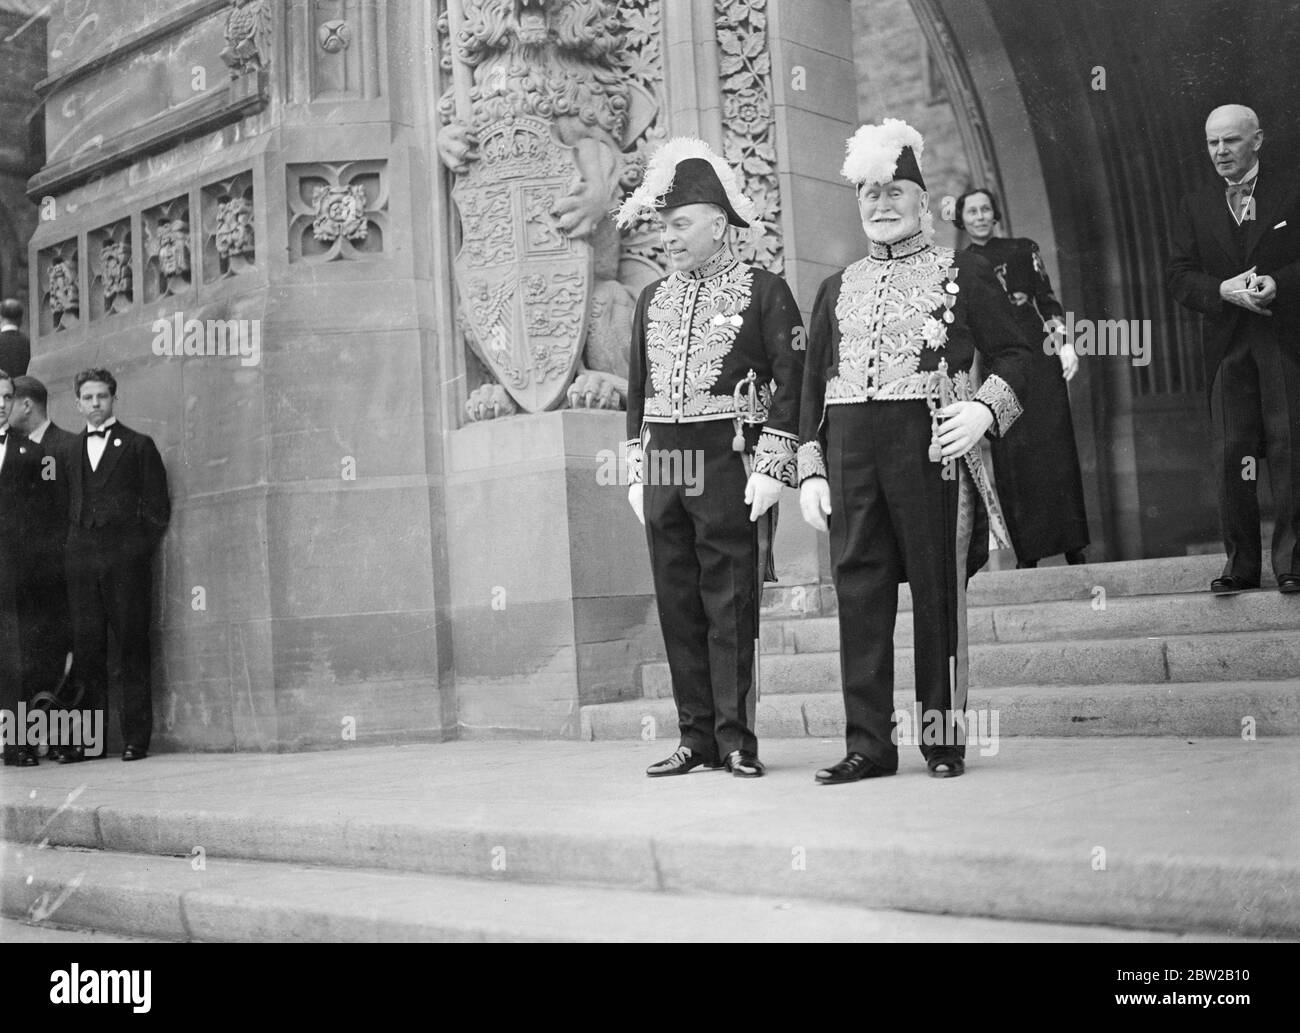 Königlicher Besuch in Kanada. Premierminister Mackenzie King (links) mit Senator Raoul Dandurand, liberaler Führer auf den Stufen des Friedensturms der Parlamentsgebäude, nach dem Besuch der Majesitäten. Bei der Gelegenheit gab der König Zustimmung vom Thron zu 8 Rechnungen durch das kanadische Parlament verabschiedet. 30 Mai 1939 Stockfoto